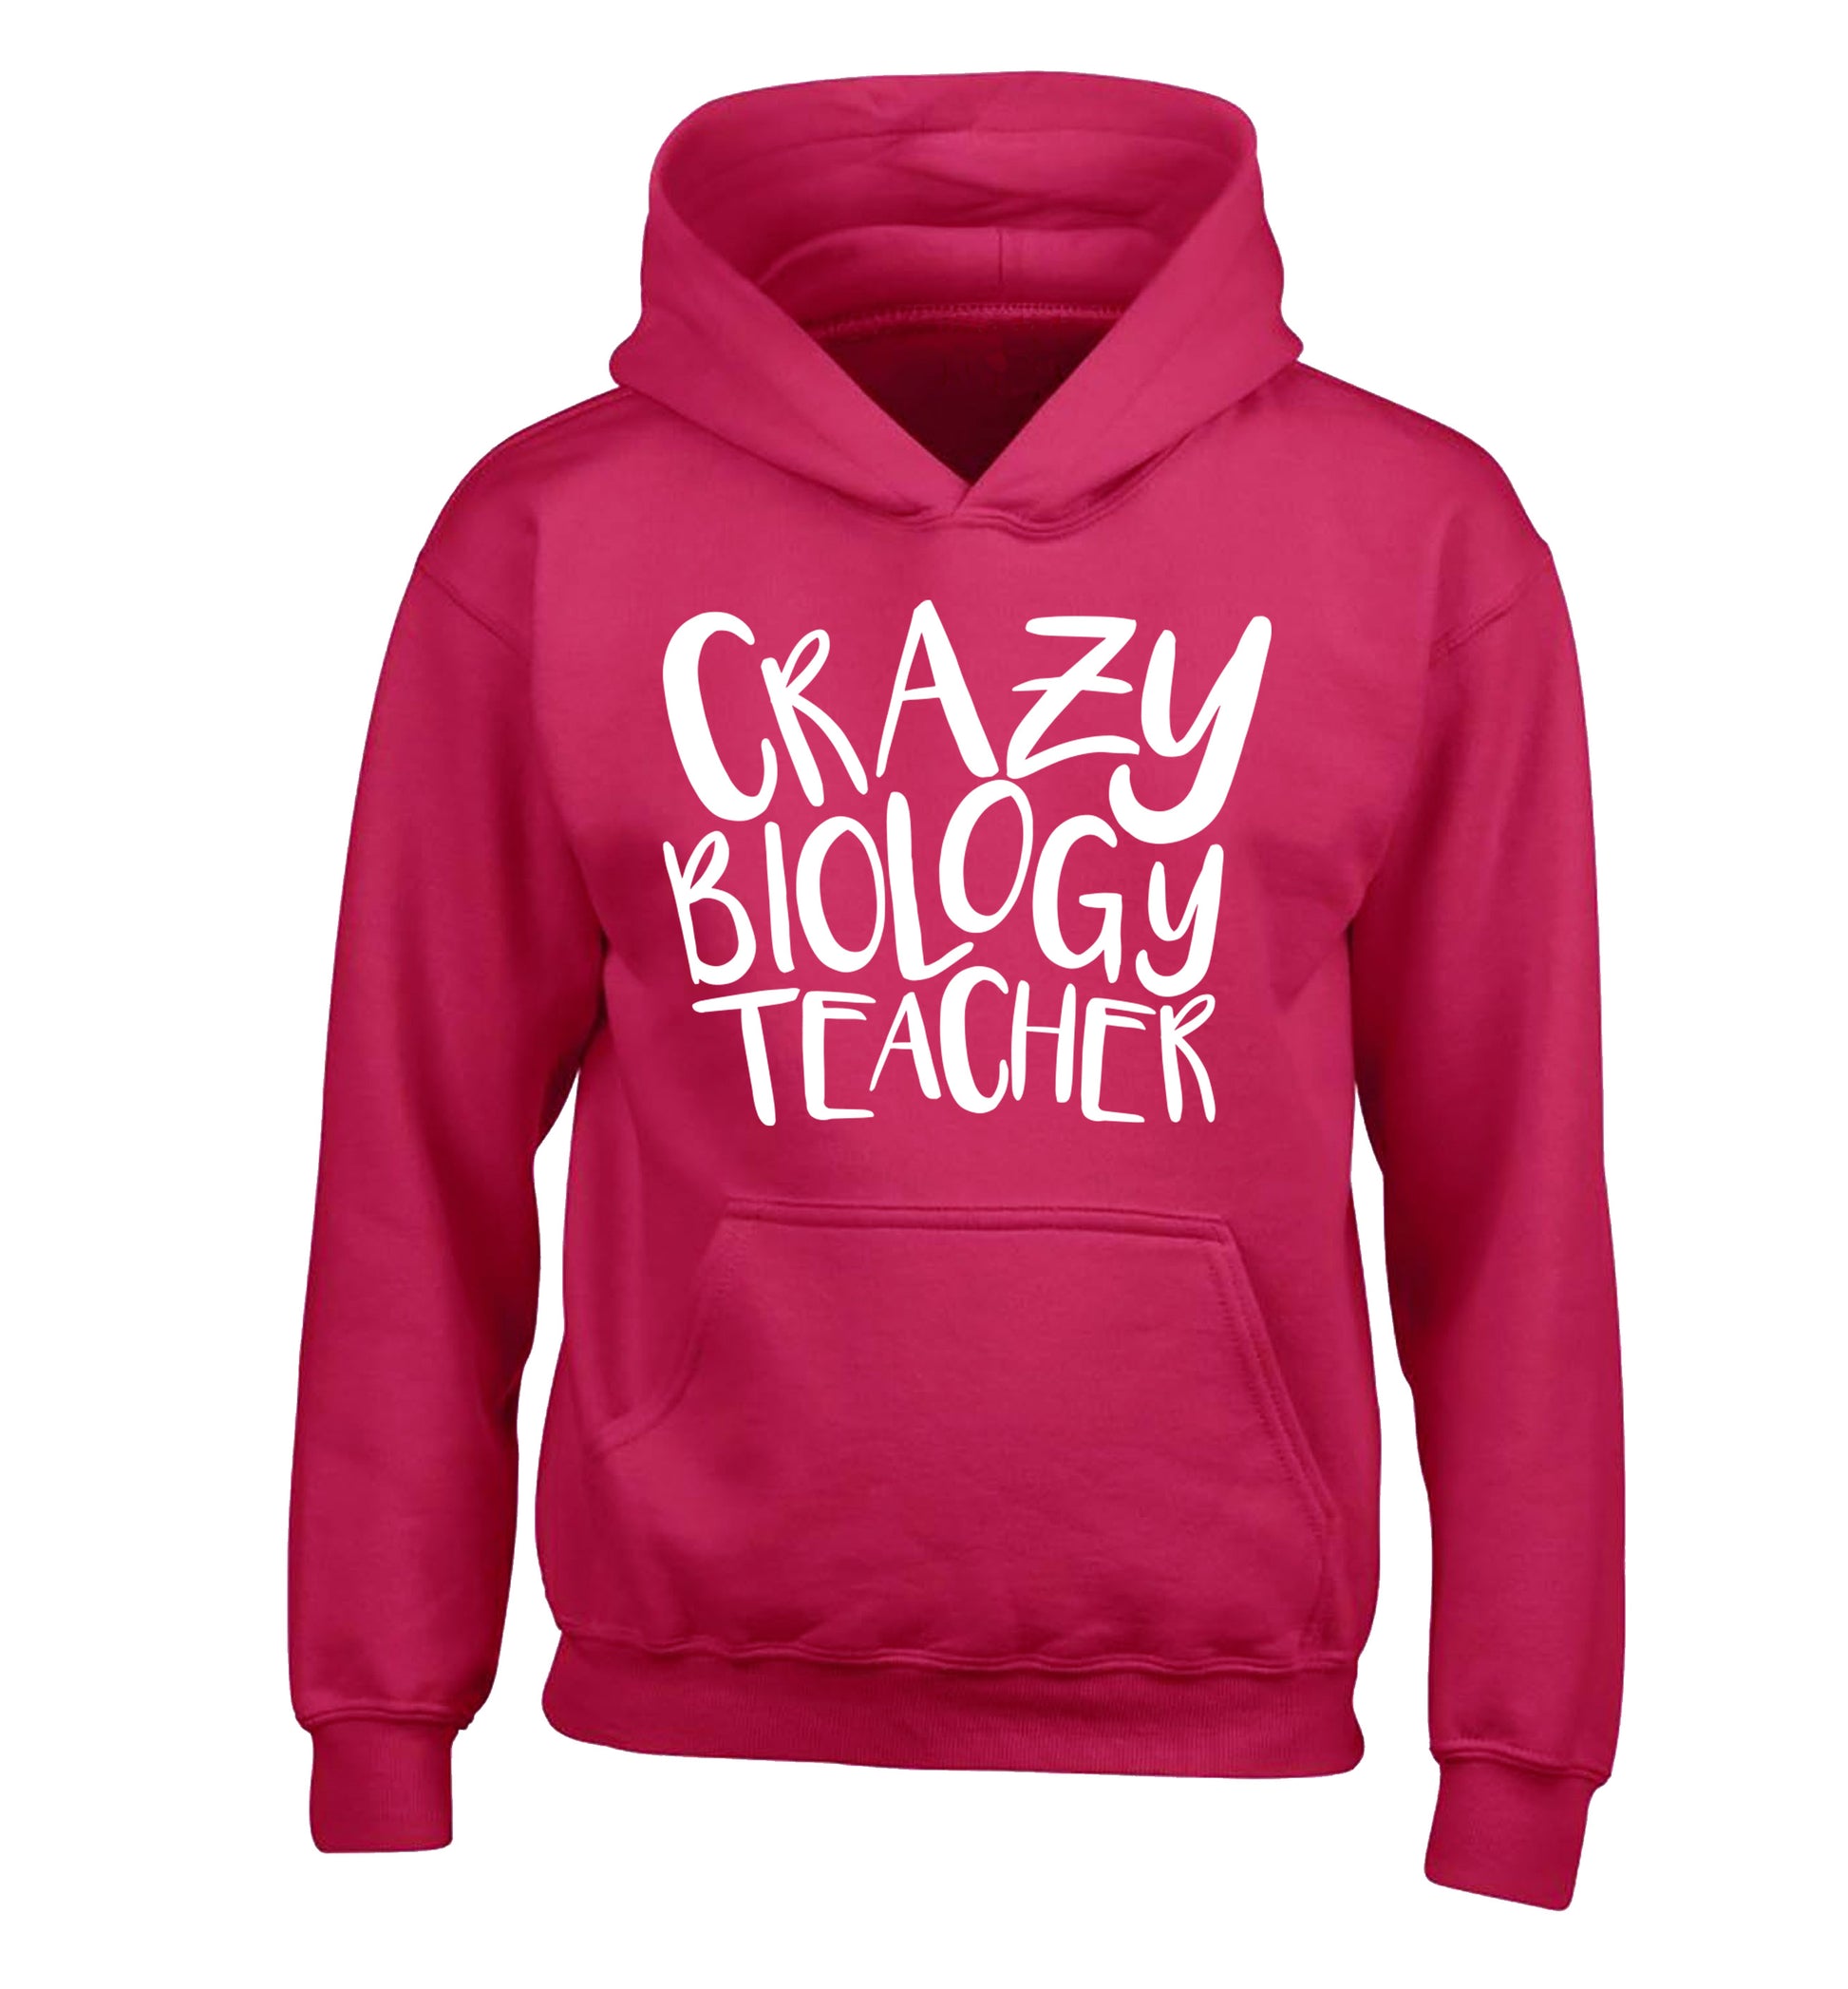 Crazy biology teacher children's pink hoodie 12-13 Years